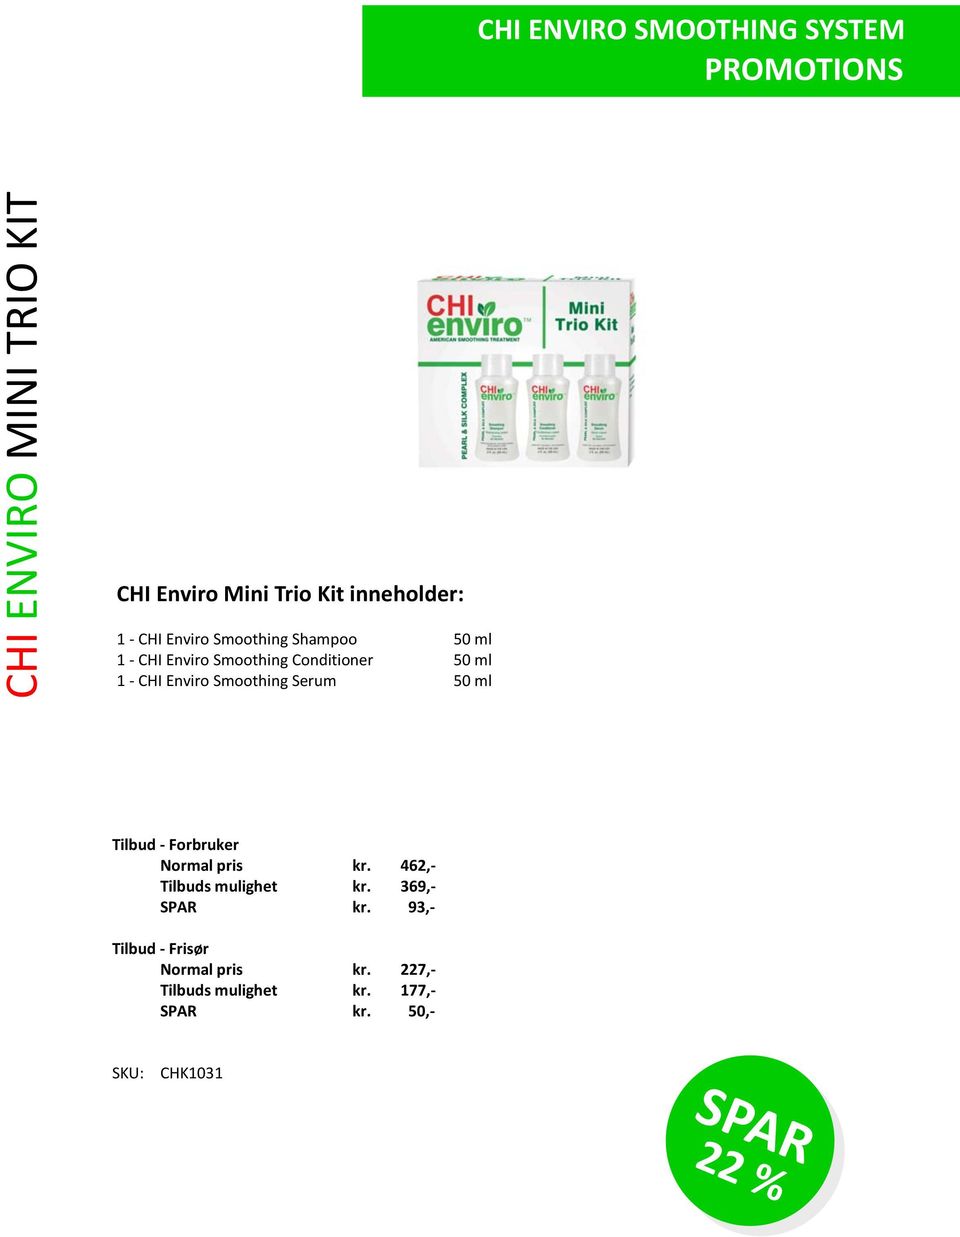 Serum 50 ml Tilbud - Forbruker Normal pris kr. 462,- Tilbuds mulighet kr. 369,- SPAR kr.